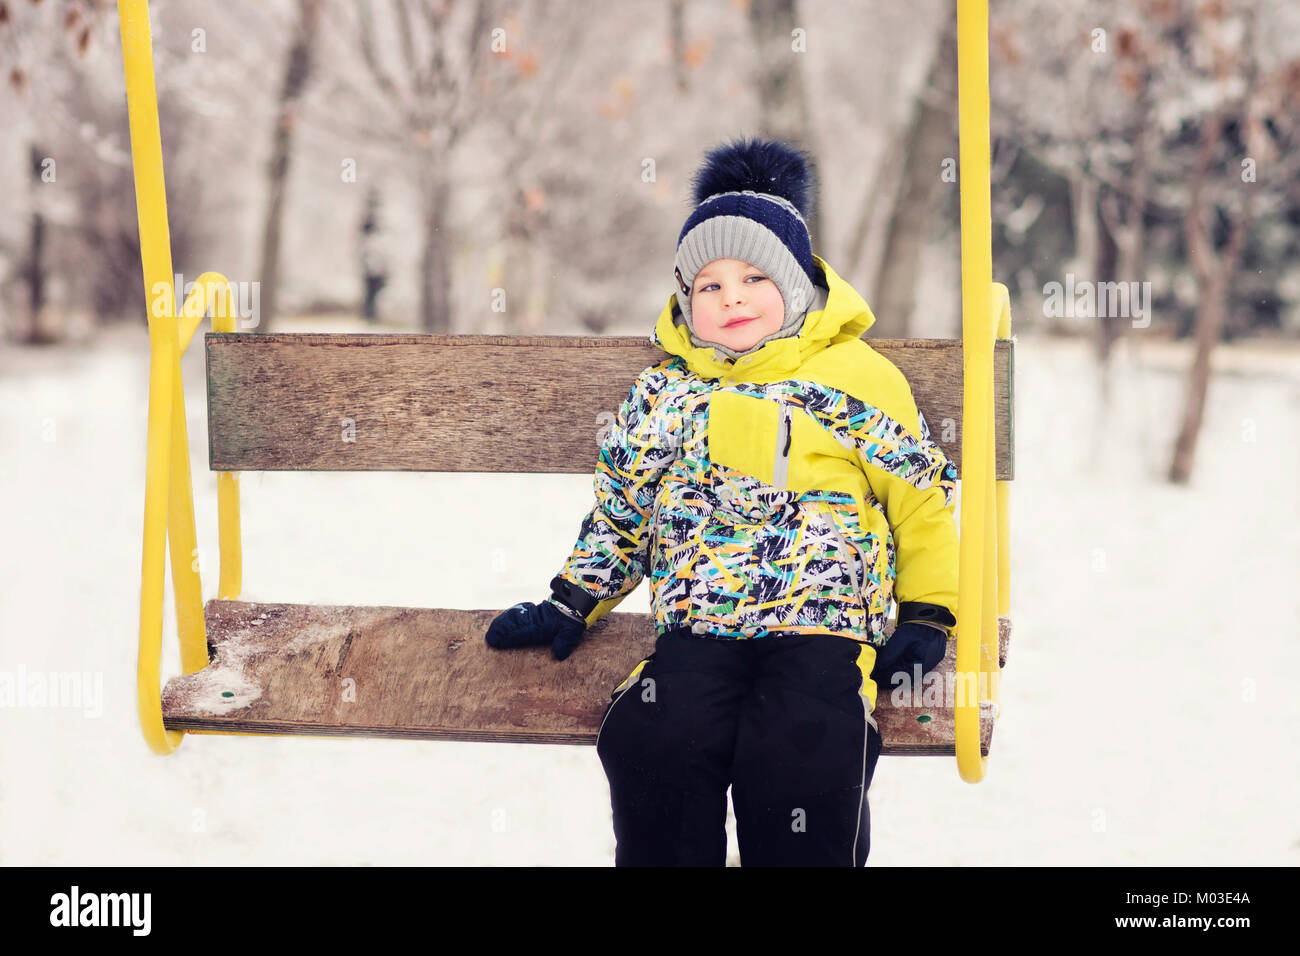 Das Kind. Junge im Winter Kleidung reiten auf einer Schaukel, Emotion, Lachen, Winter, Schnee Stockfoto